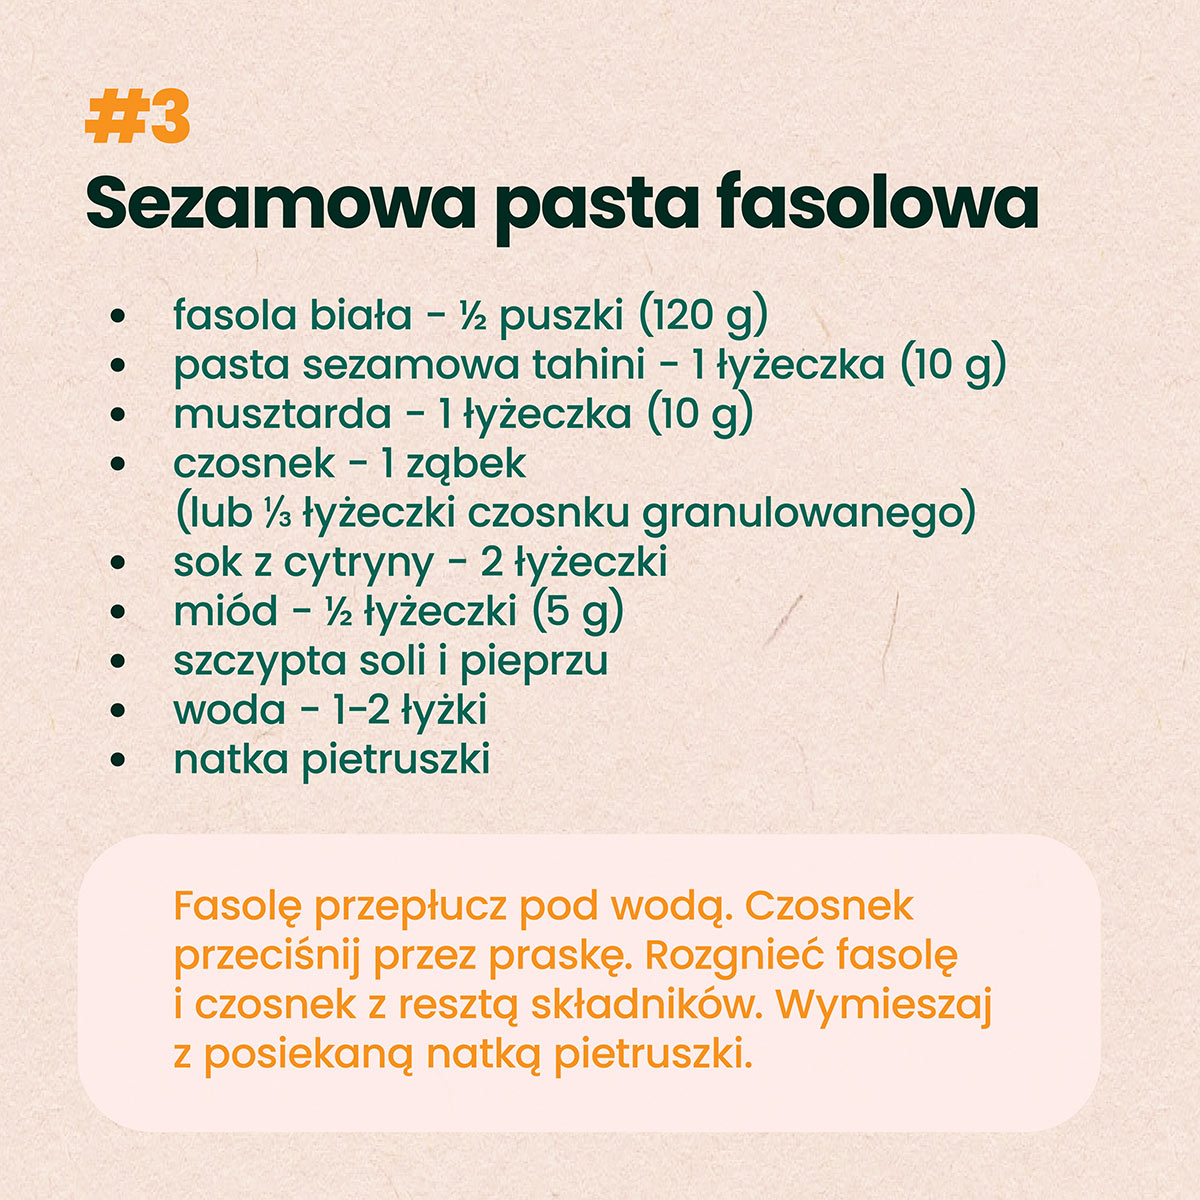 sezamowa pasta fasolowa